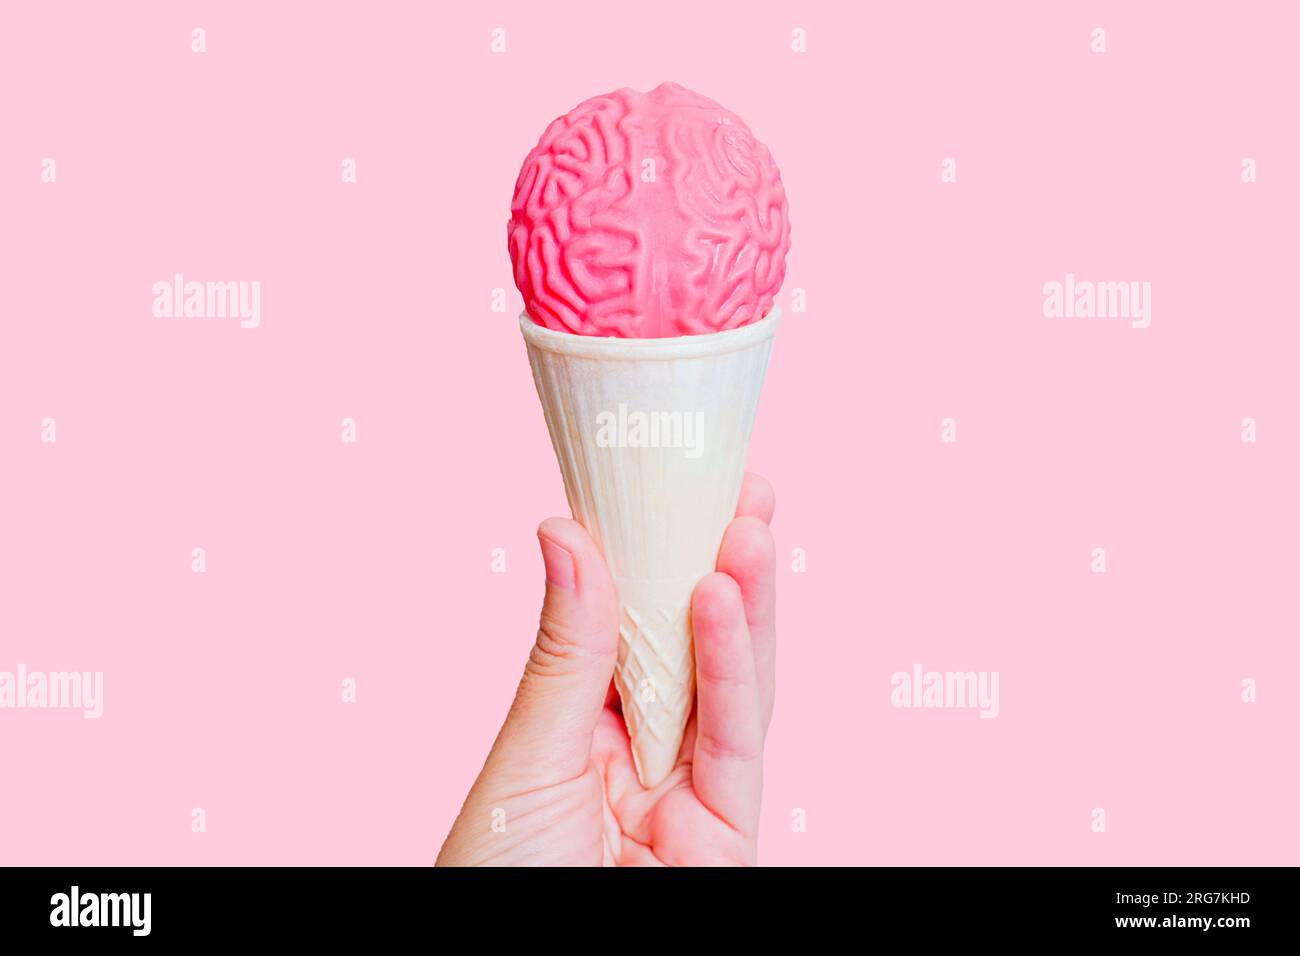 Eiskegel gekrönt mit gelee-ähnlichem menschlichem Hirnmodell in der Hand isoliert auf pinkem Hintergrund. Abenteuerkonzept mit aufmerksamer Verkostung. Stockfoto